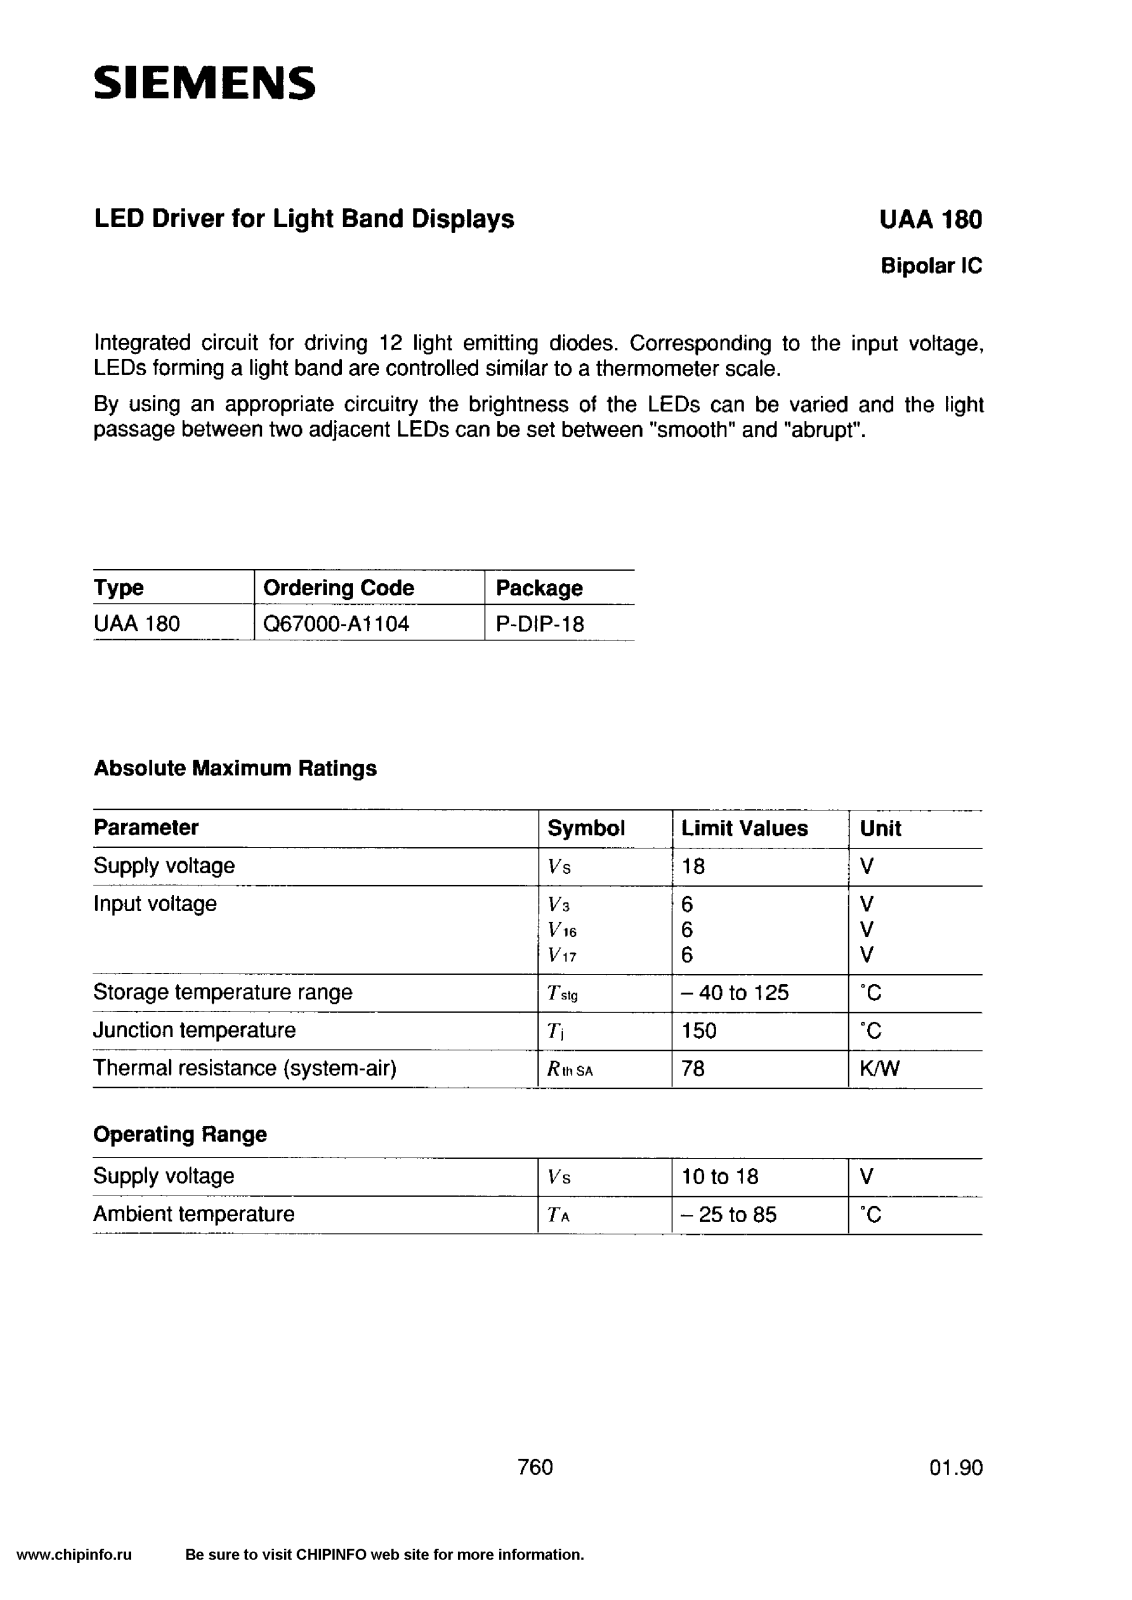 Siemens UAA180 Datasheet